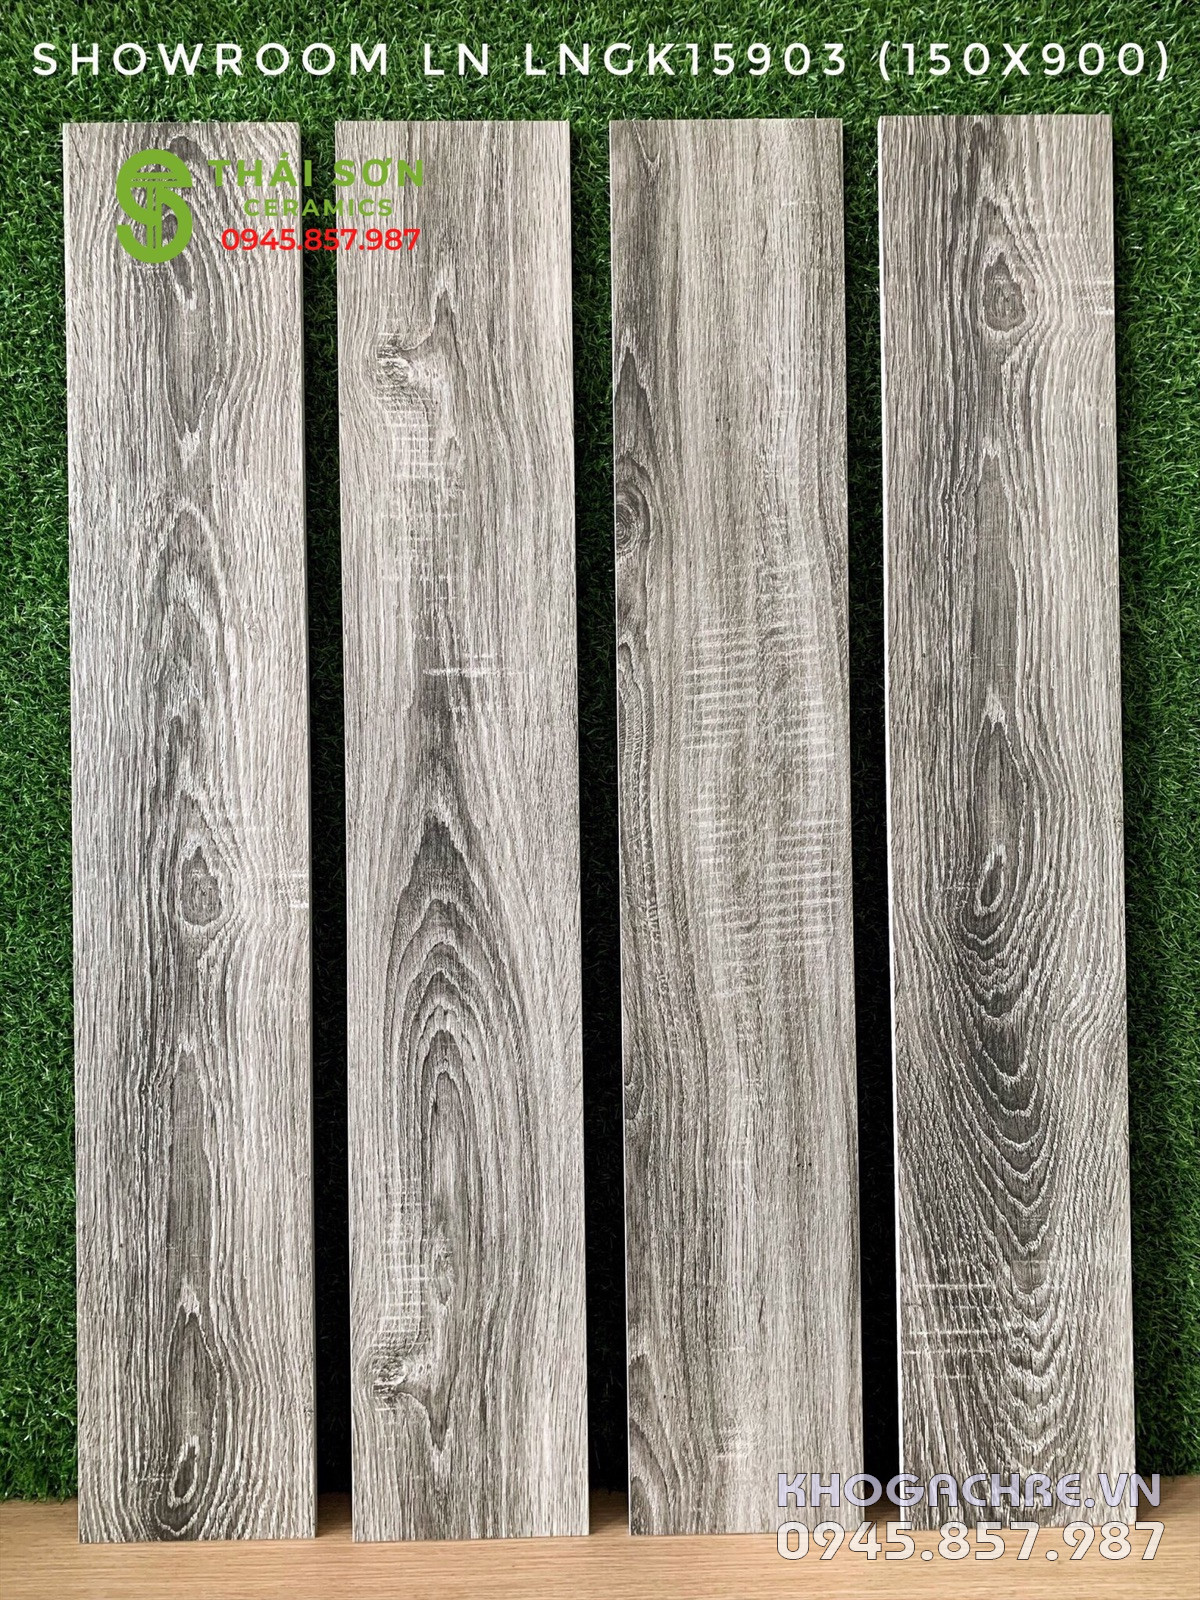 Mẫu gạch giả gỗ 15x90 đẹp giá ưu đãi nhất